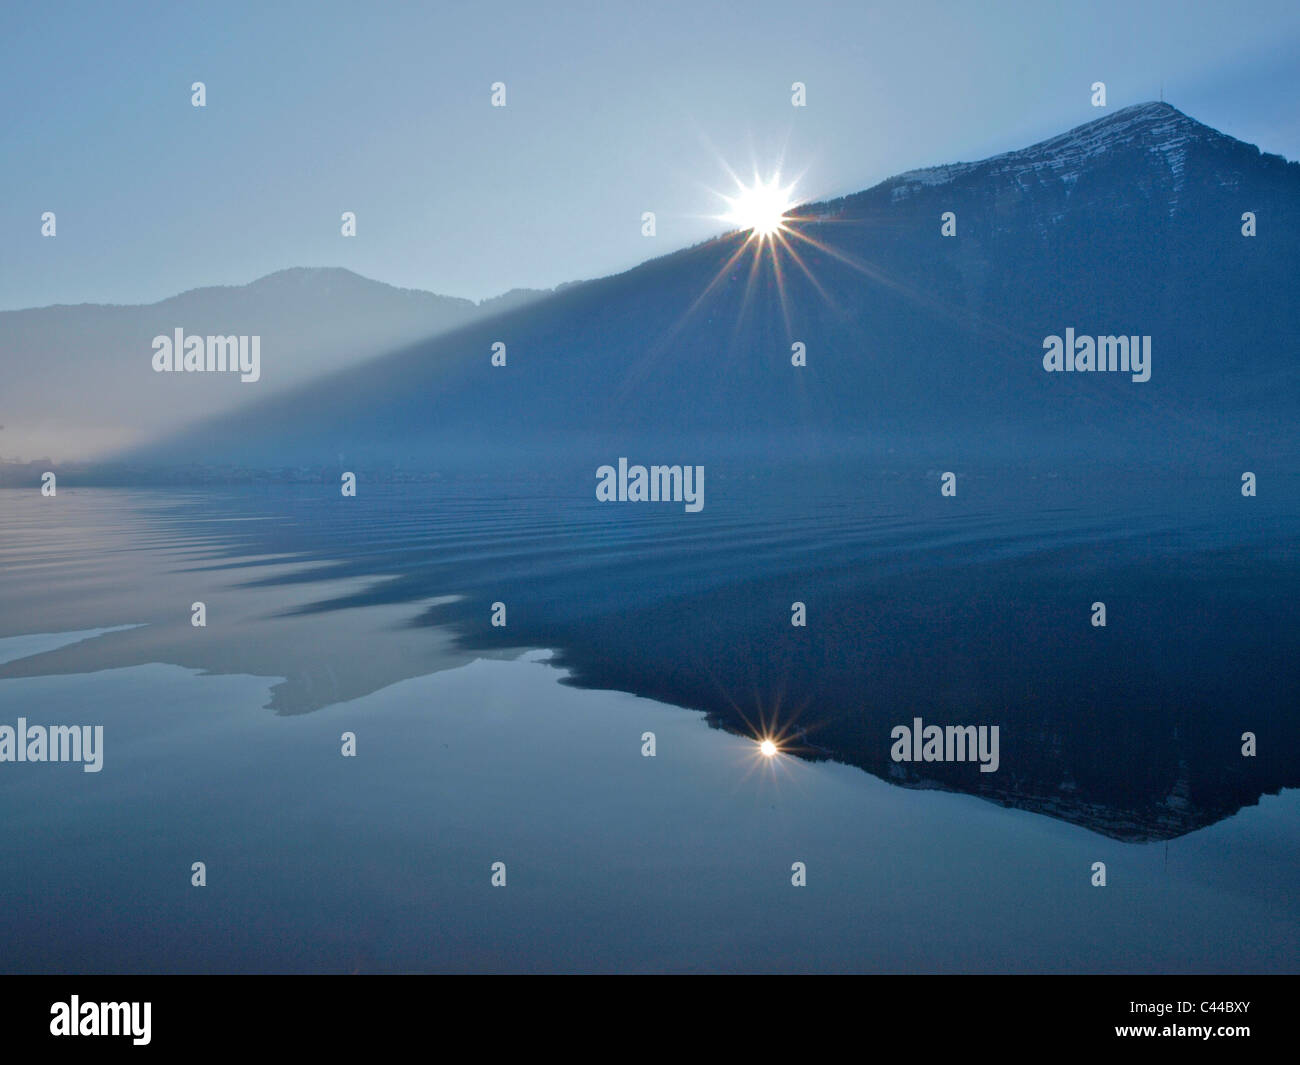 Mountain, blue, Rigi, sun, waters, lake of Zug, Switzerland, canton Zug, reflection Stock Photo